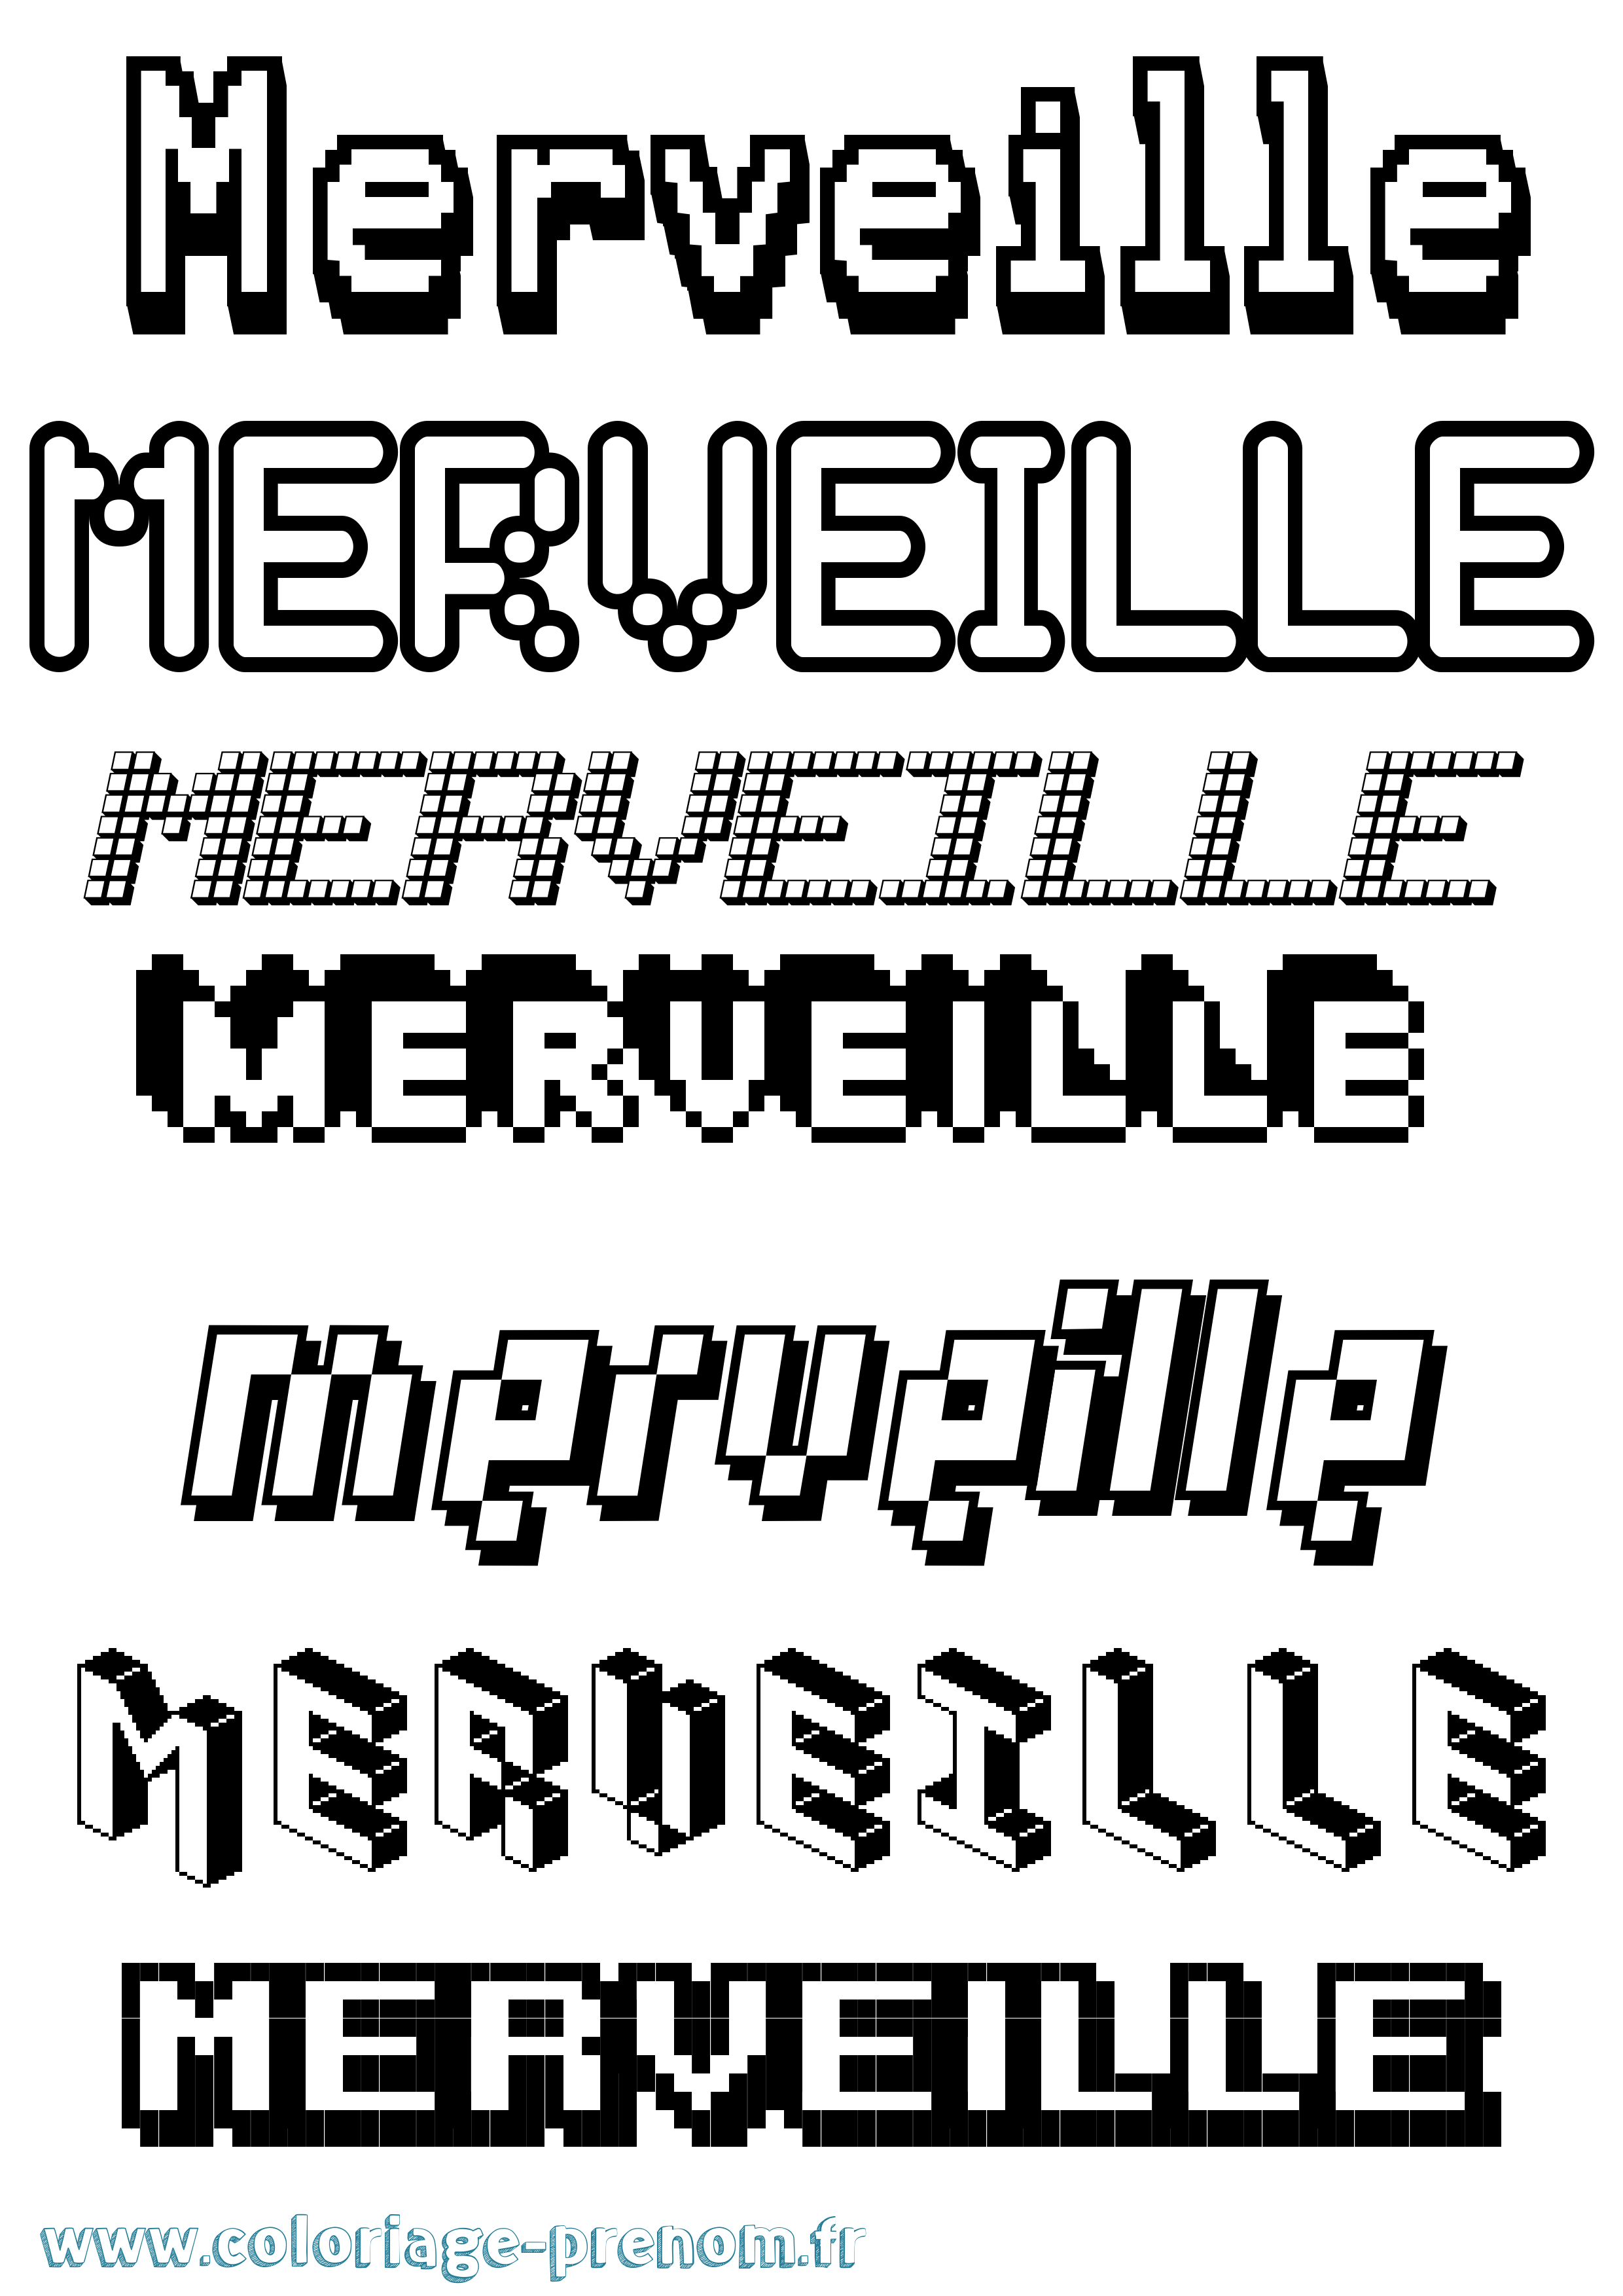 Coloriage prénom Merveille Pixel